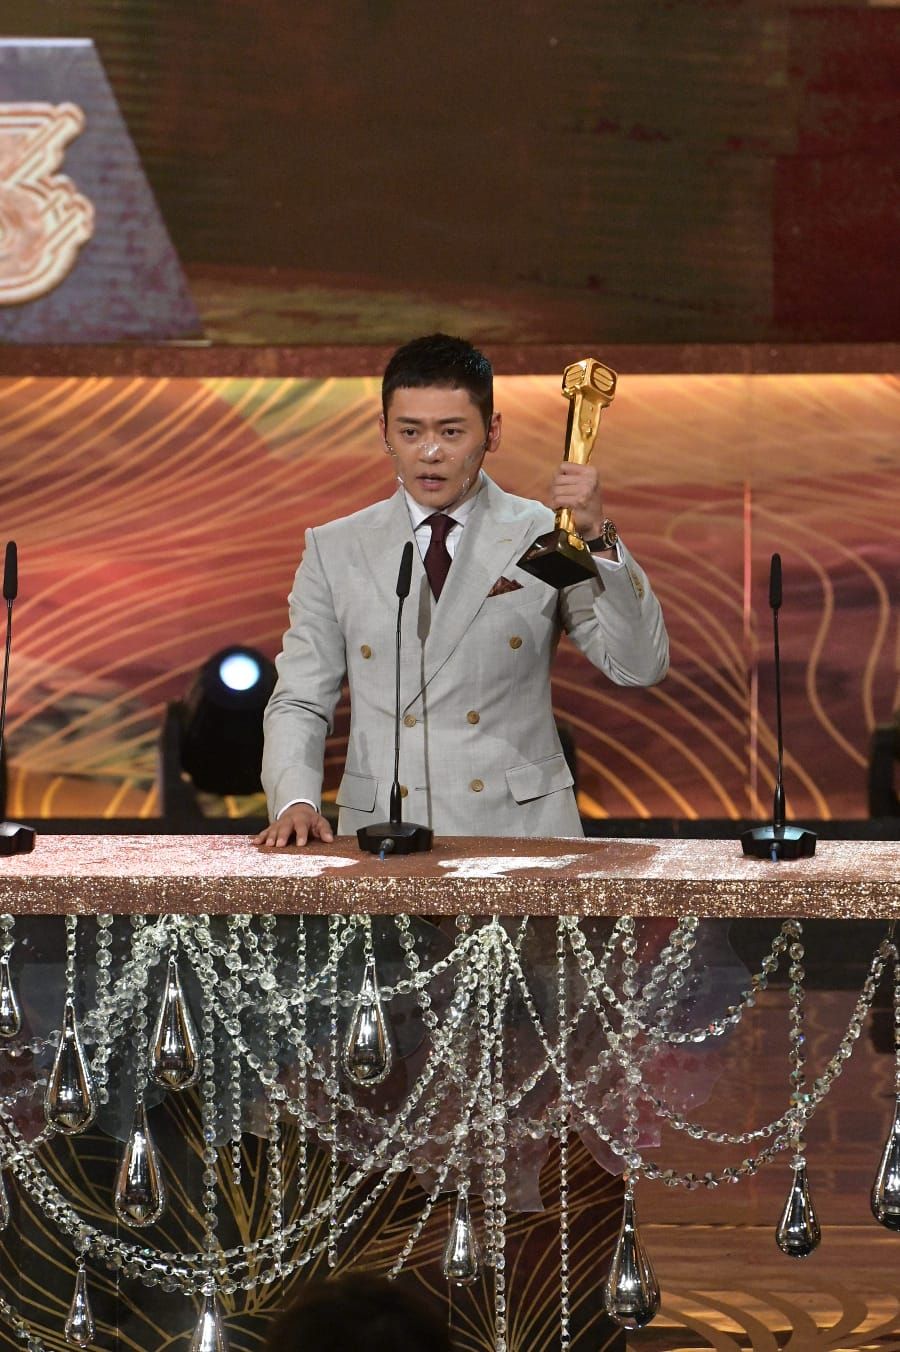 《反黑路人甲》为张振朗带来“最受欢迎电视男角色”奖项。